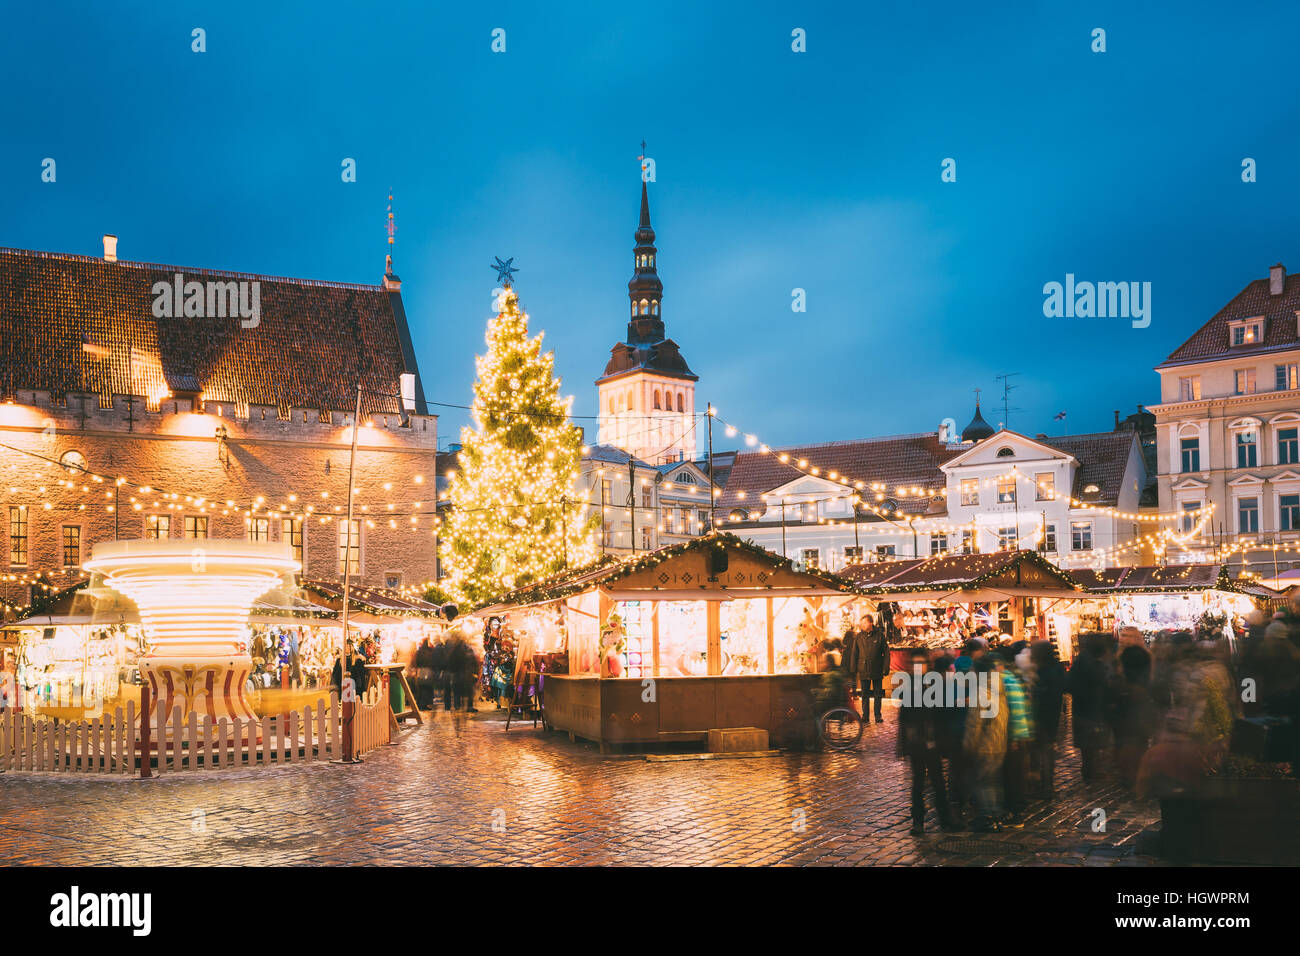 Marché de Noël traditionnel sur la place de l'Hôtel de Ville - Place Raekoja à Tallinn, Estonie. Arbre de Noël et de maisons de commerce avec vente de cadeaux de Noël, Banque D'Images